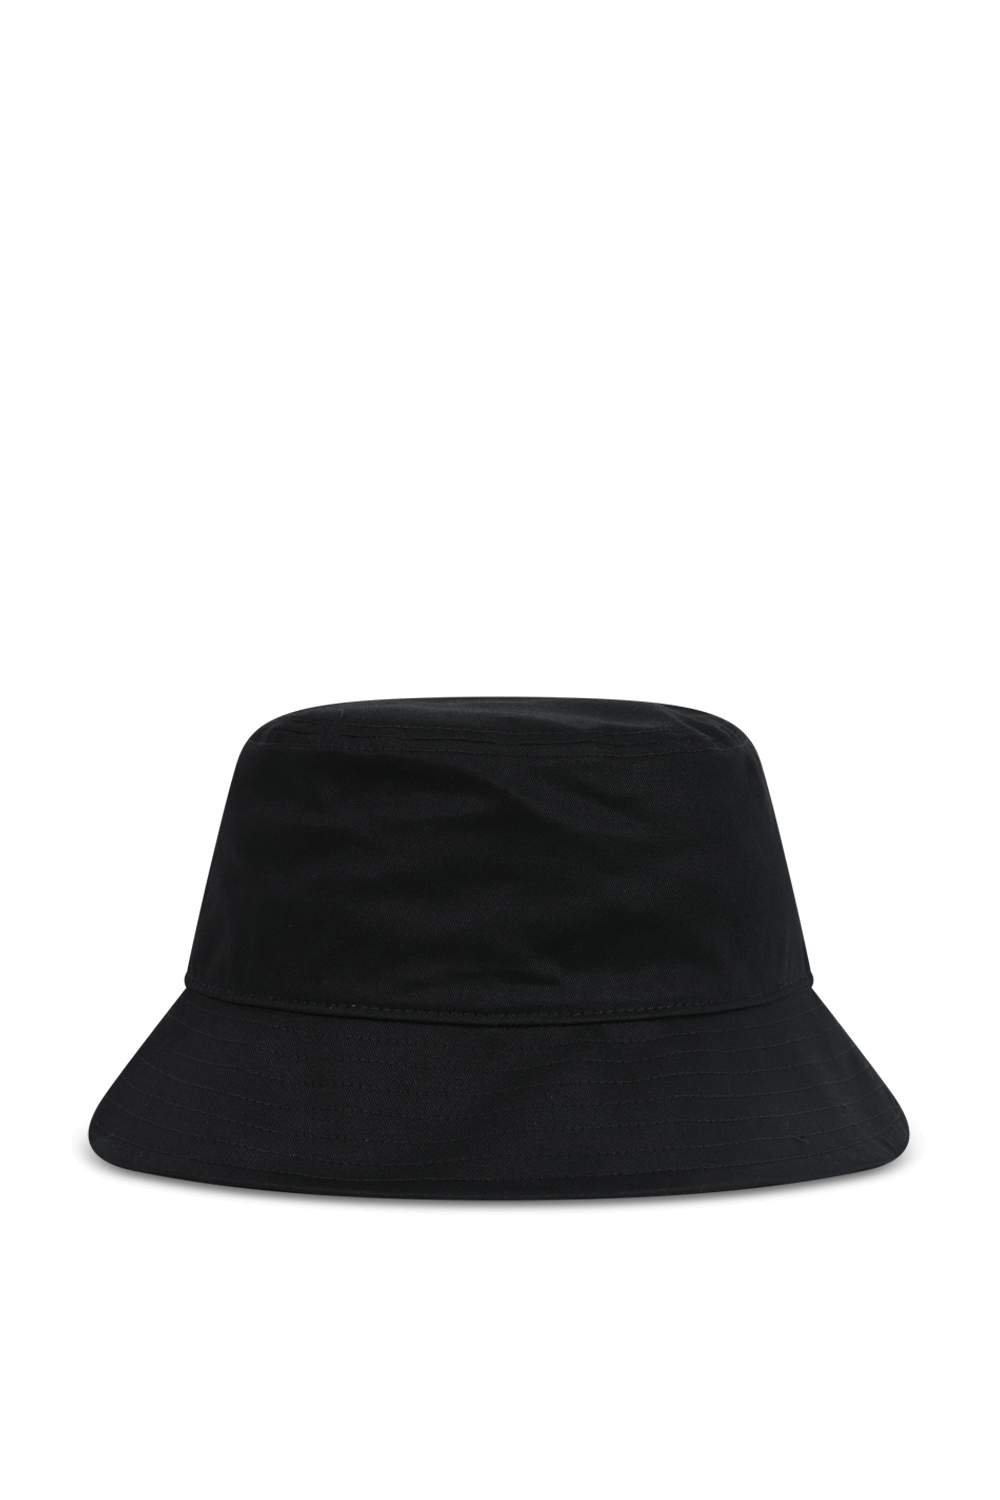 כובע באקט עם לוגו בגוון שחור CALVIN KLEIN